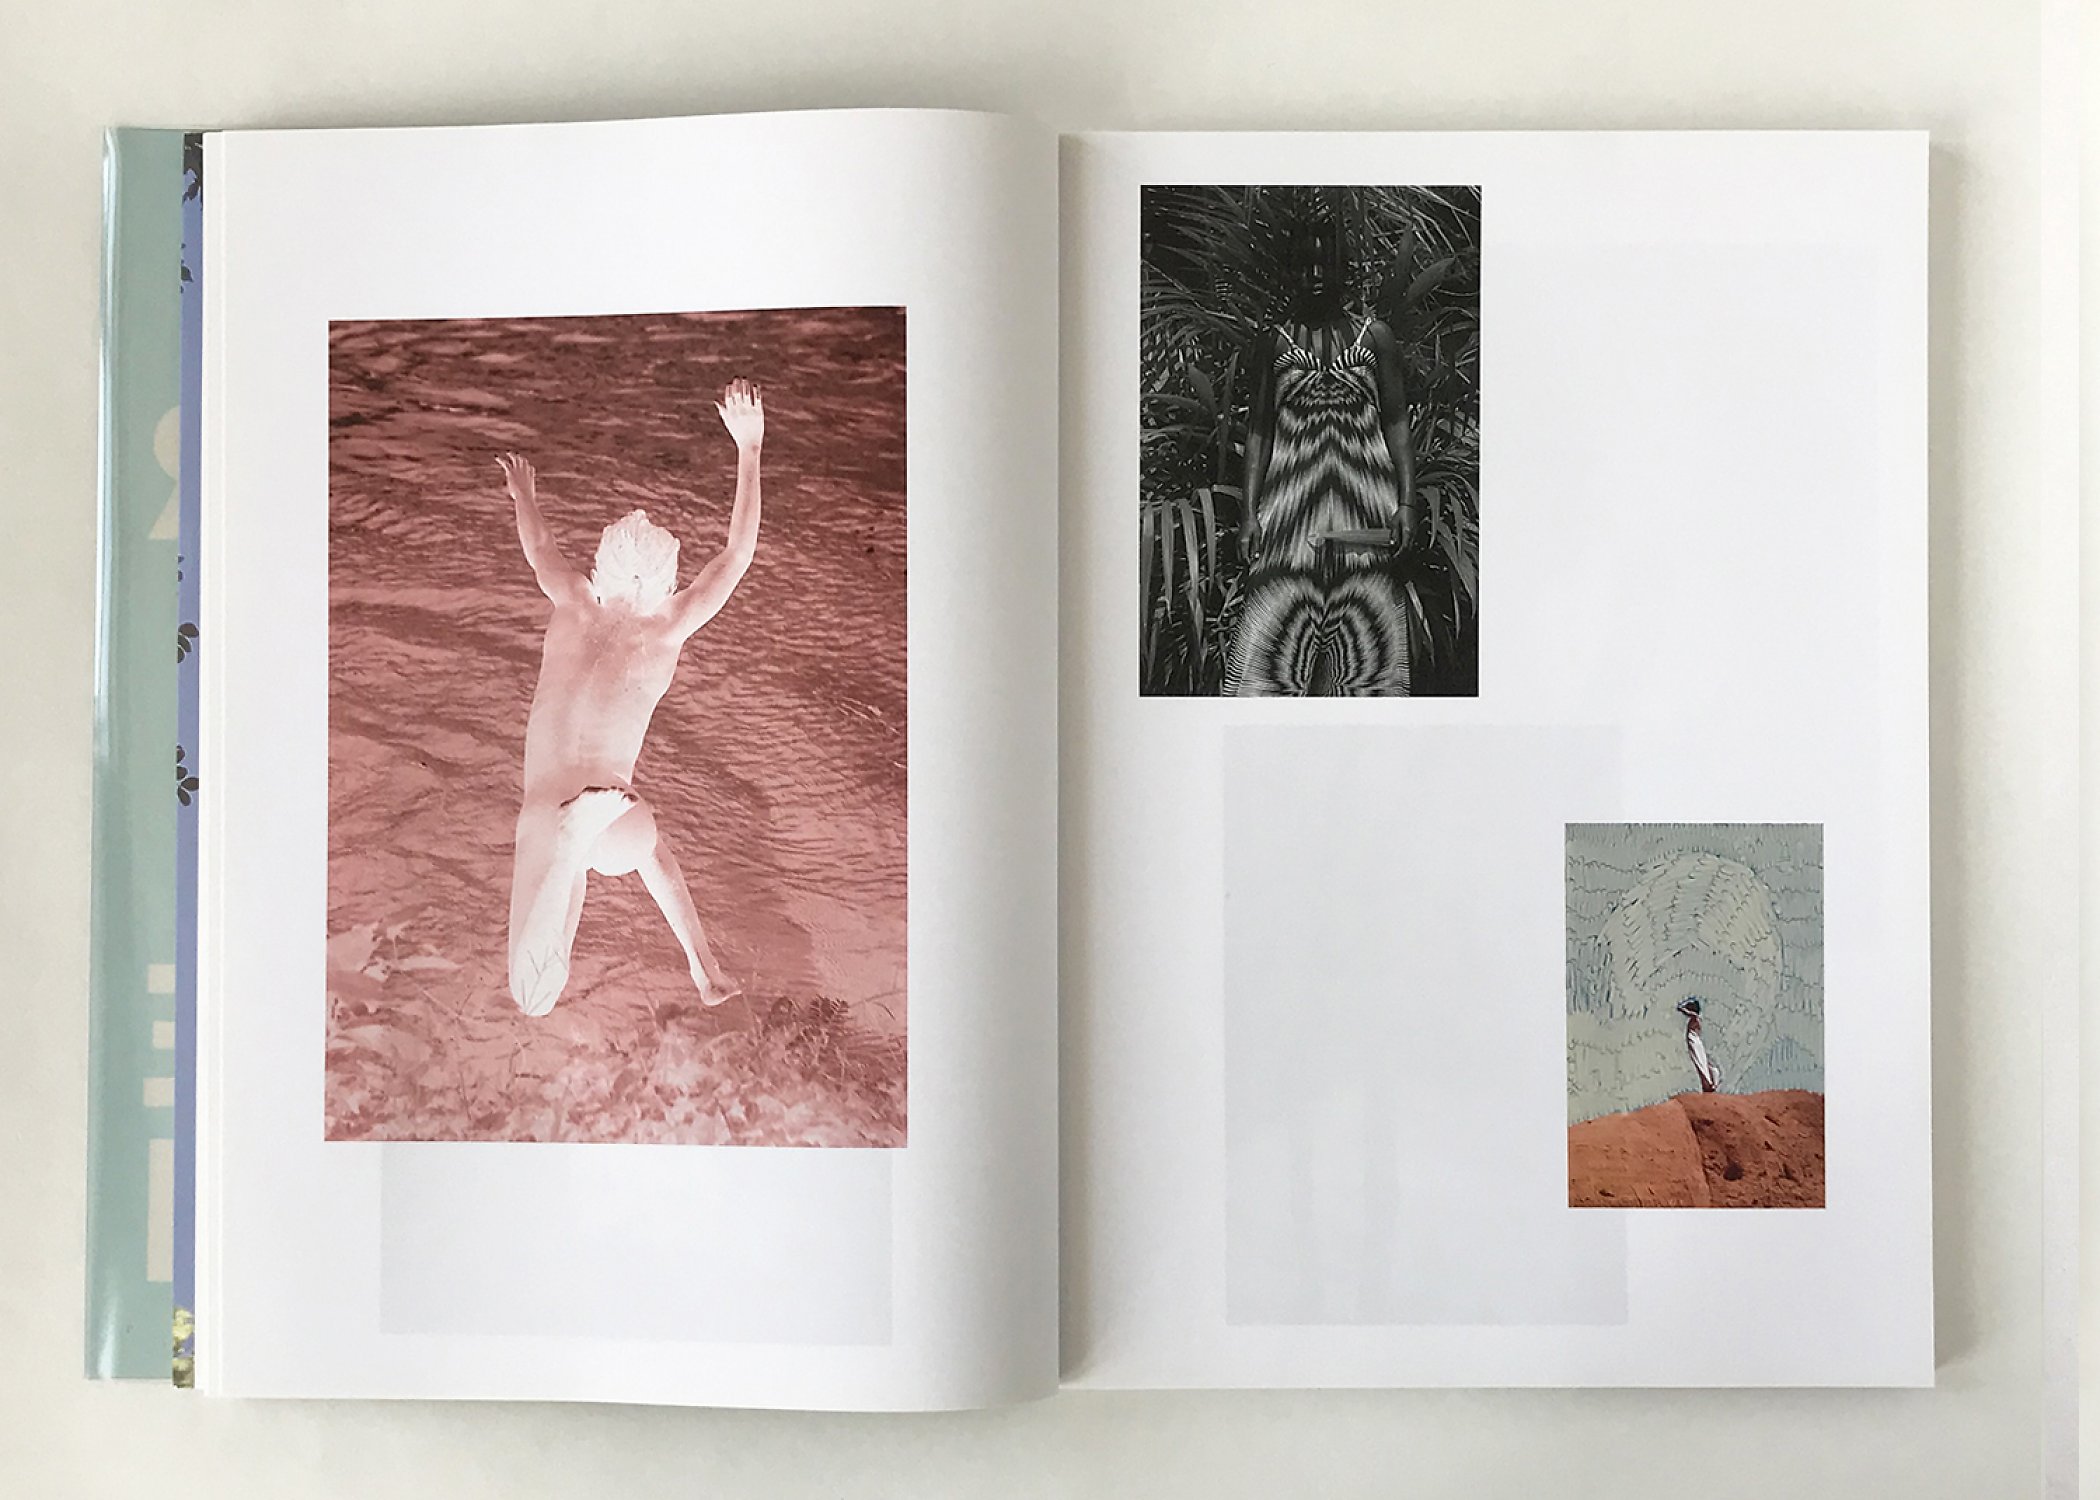 Viviane Sassen: Hot Mirror Paperback Book - Viviane Sassen Photography Book  For Sale — Maison Plage